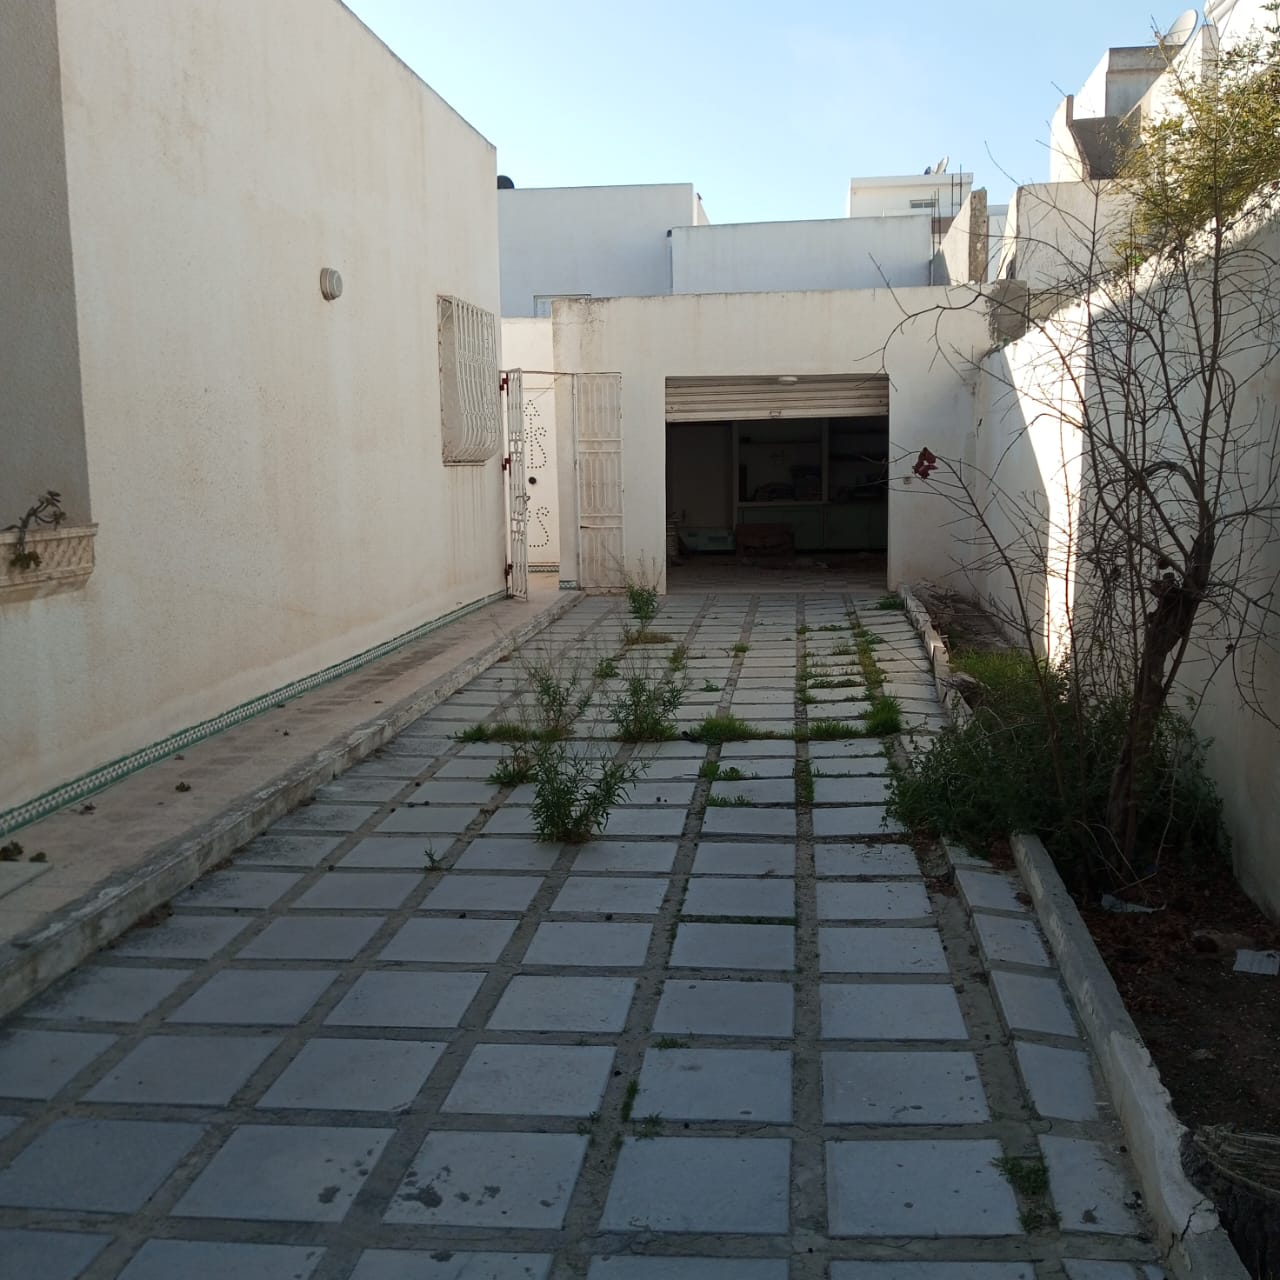 Sousse Jaouhara Sousse Ibn Khaldoun Vente Maisons Villa  rnover cit olympique sousse